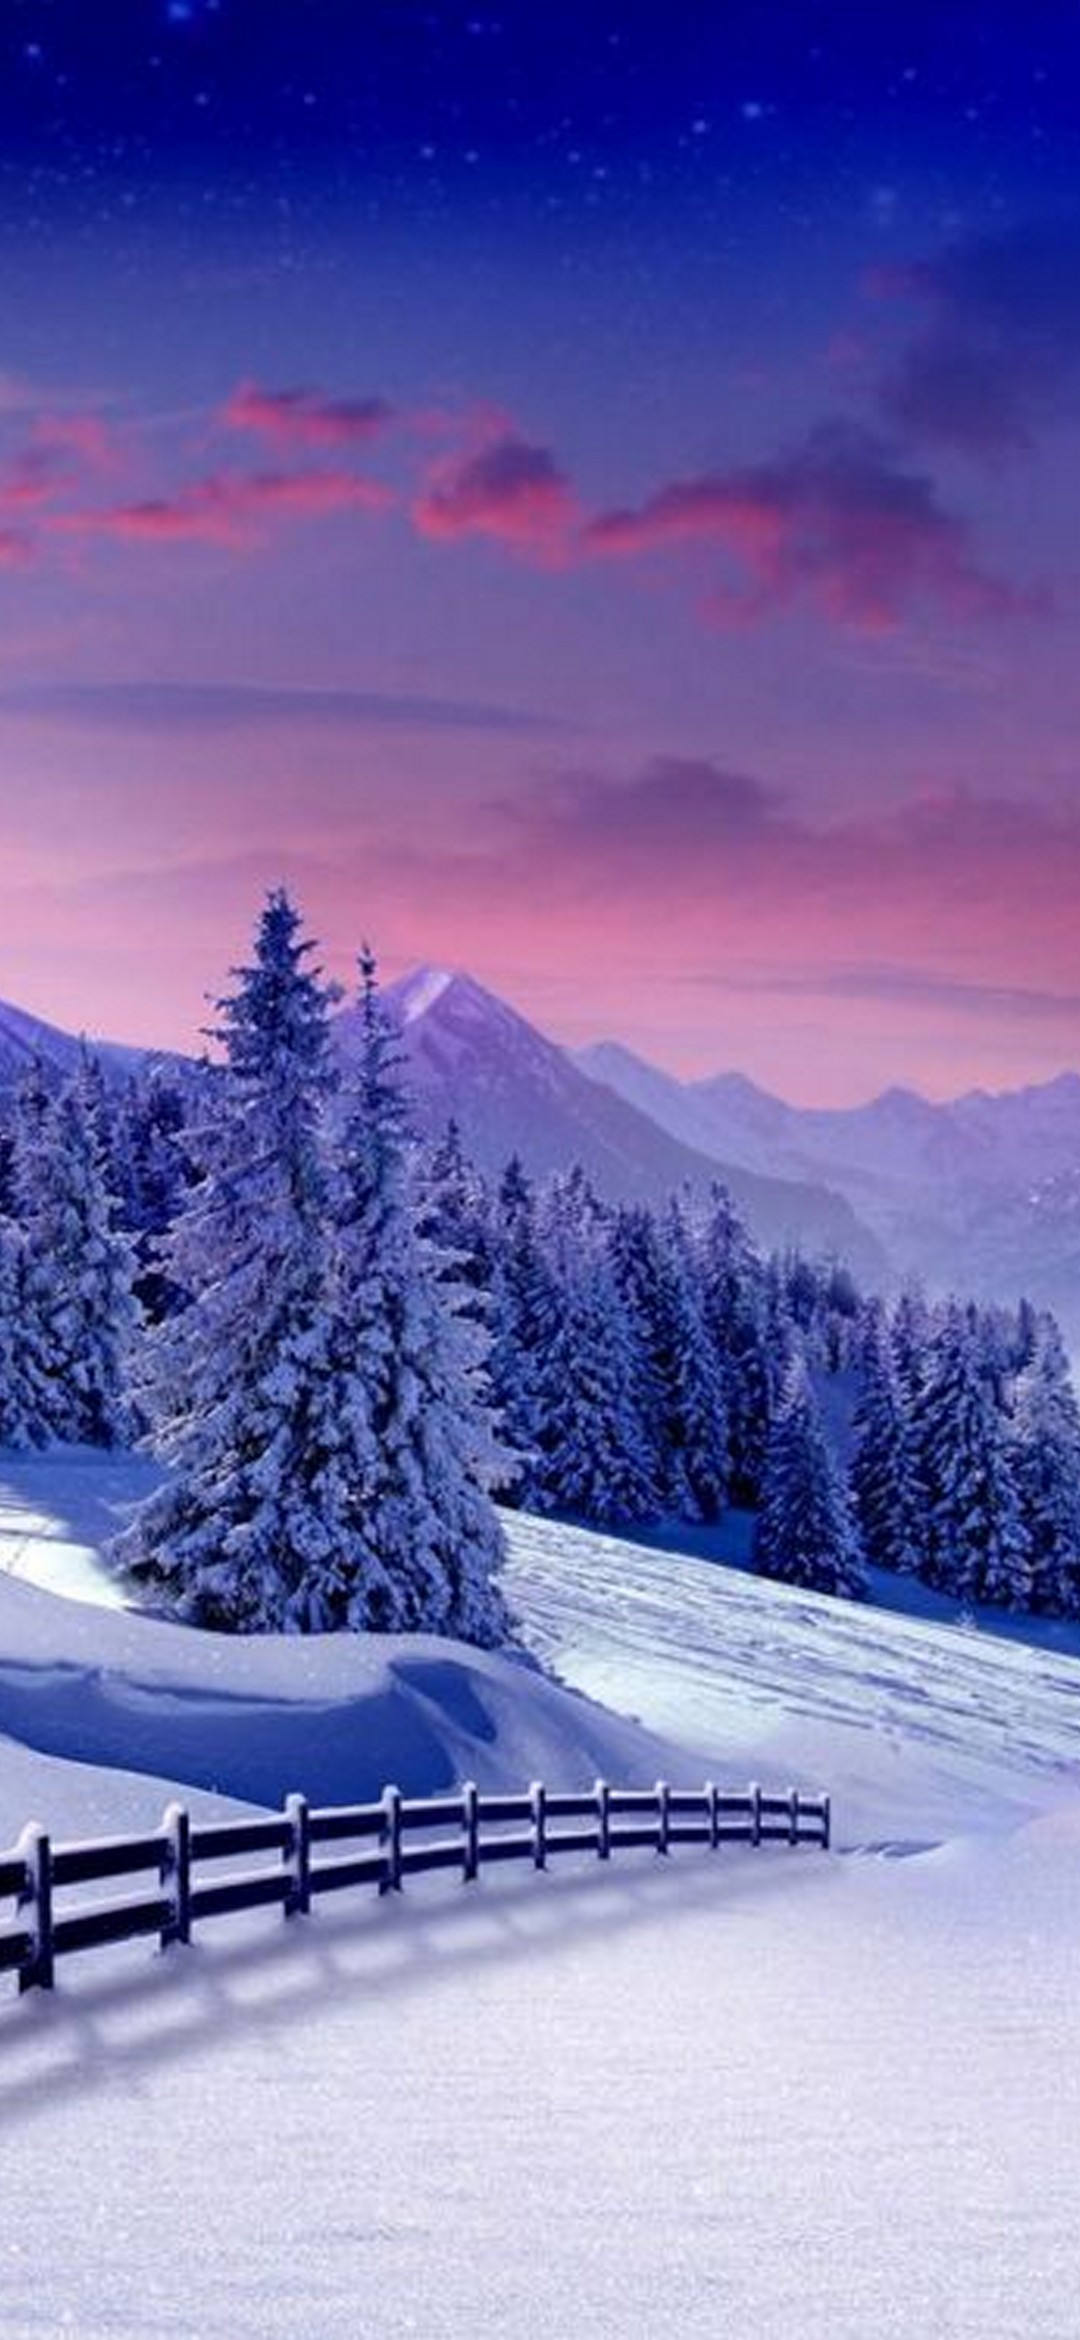 風景の携帯電話の壁紙,雪,冬,自然,空,自然の風景